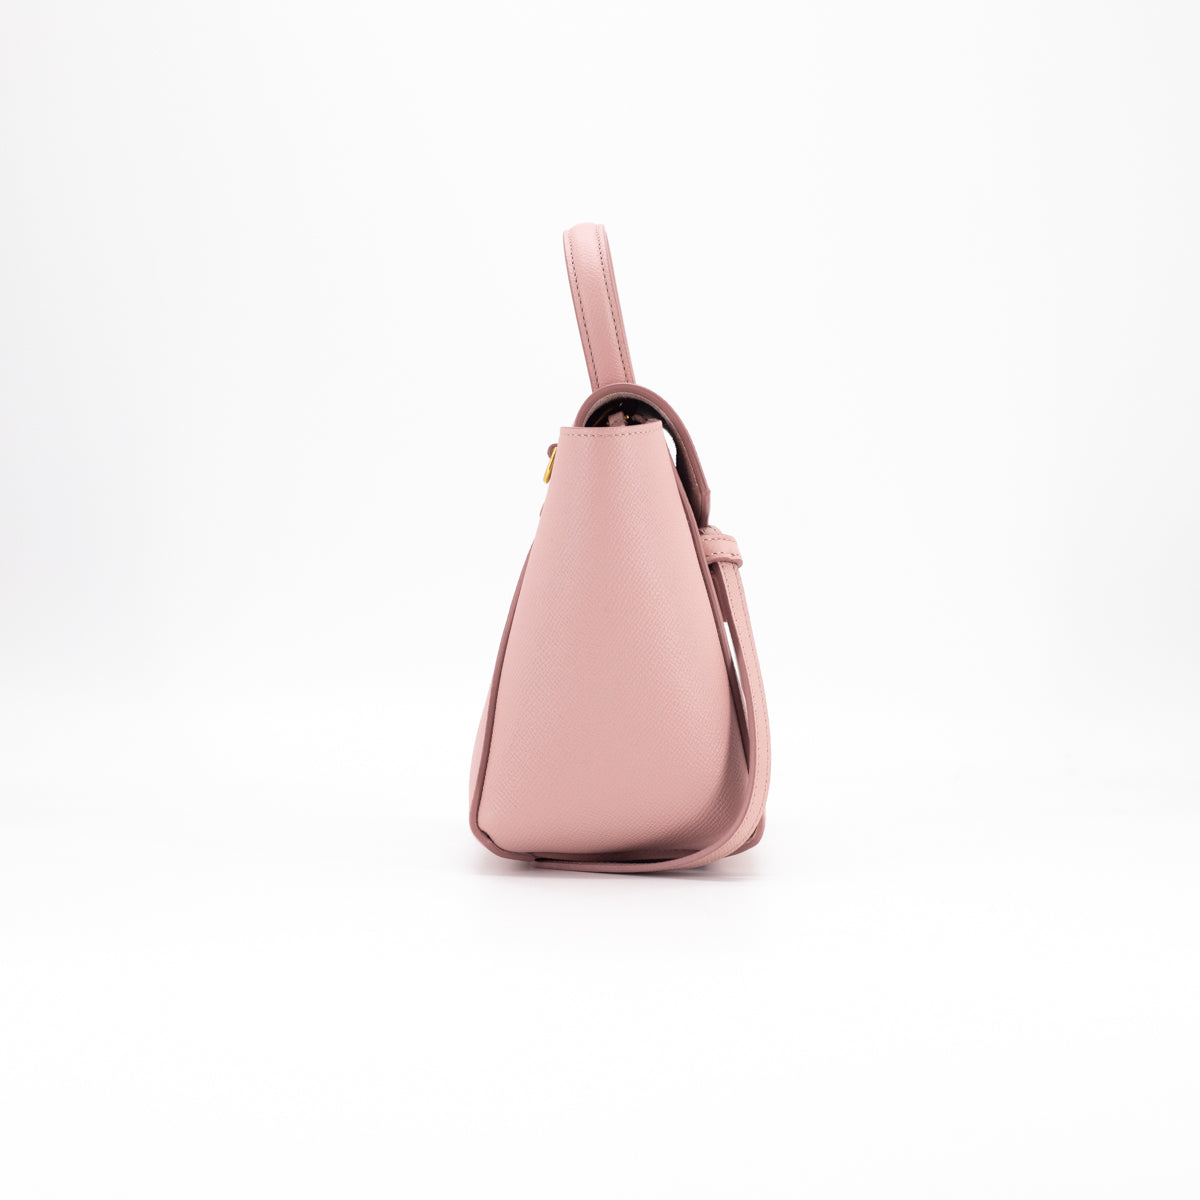 Celine Nano Belt Bag Vintage Pink - THE PURSE AFFAIR